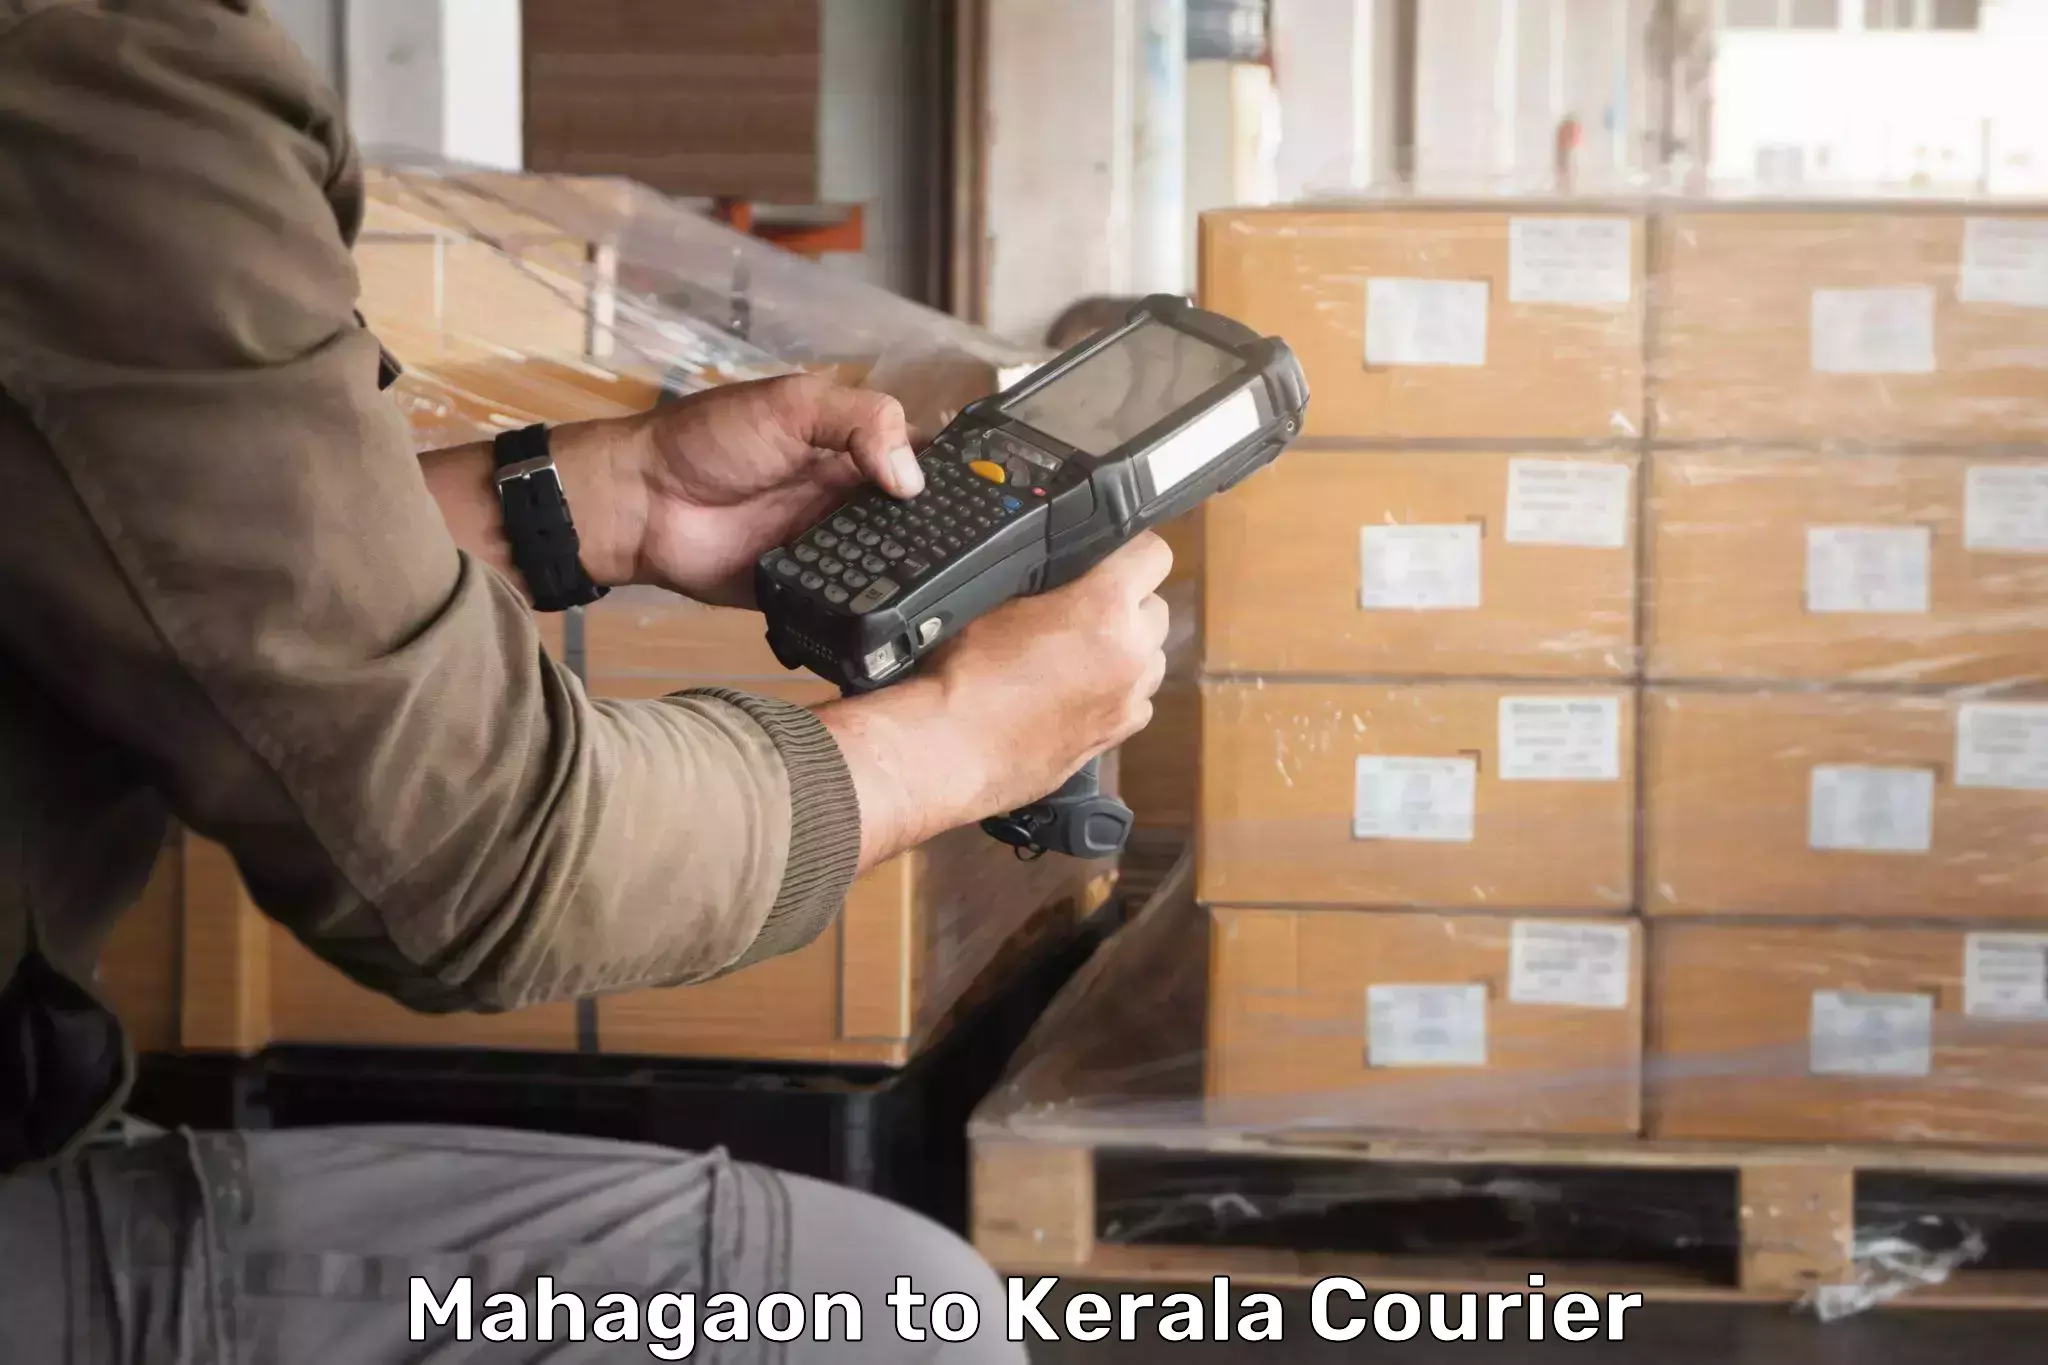 Bulk courier orders Mahagaon to Thiruvananthapuram